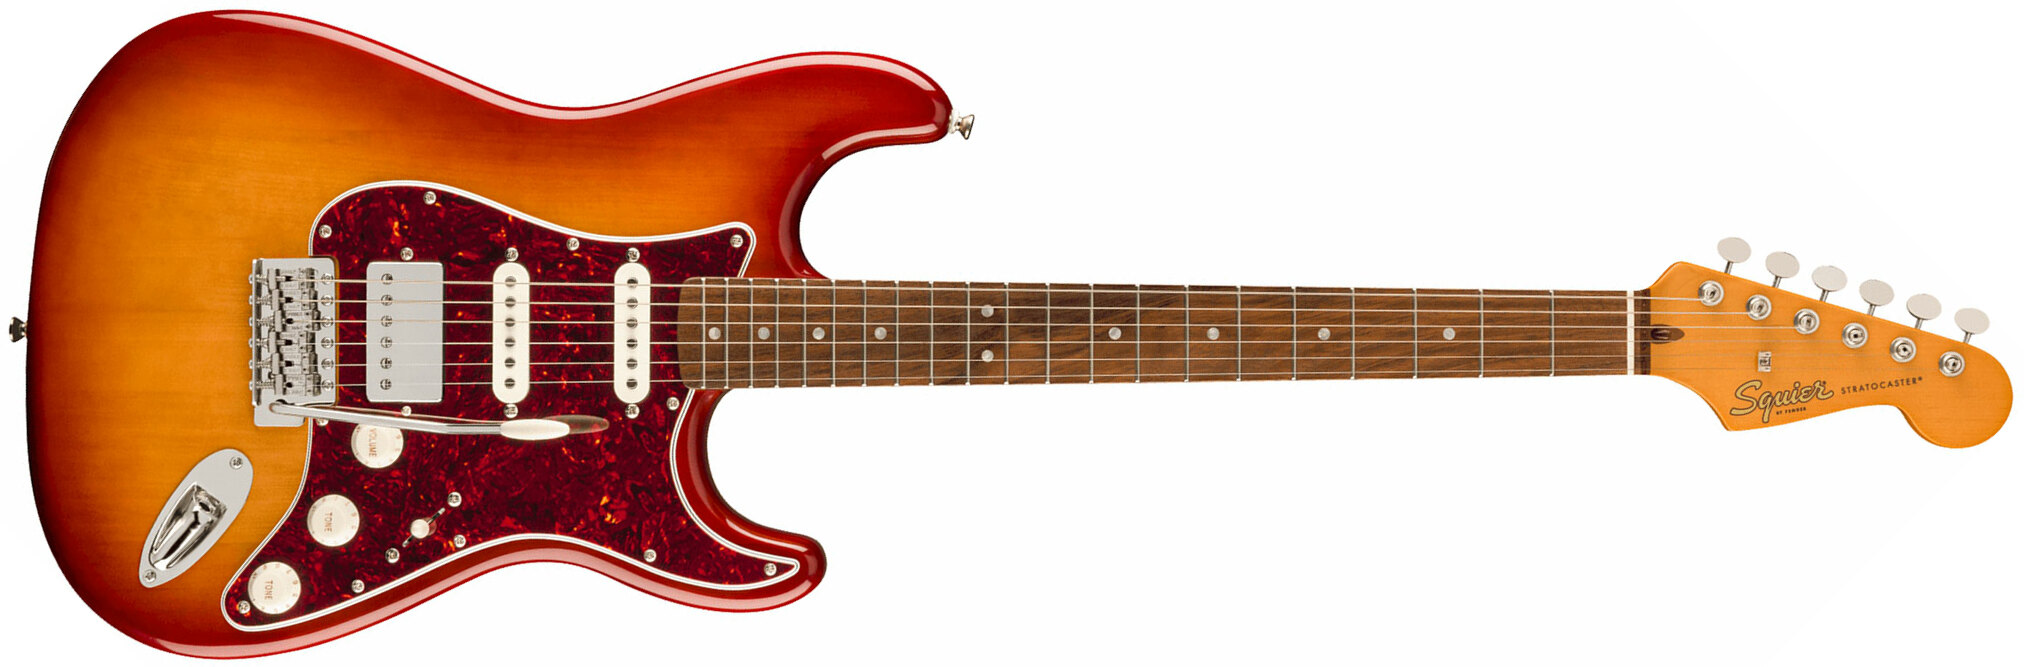 Squier Strat 60s Classic Vibe Ltd Hss Trem Lau - Sienna Sunburst - Guitare Électrique Forme Str - Main picture